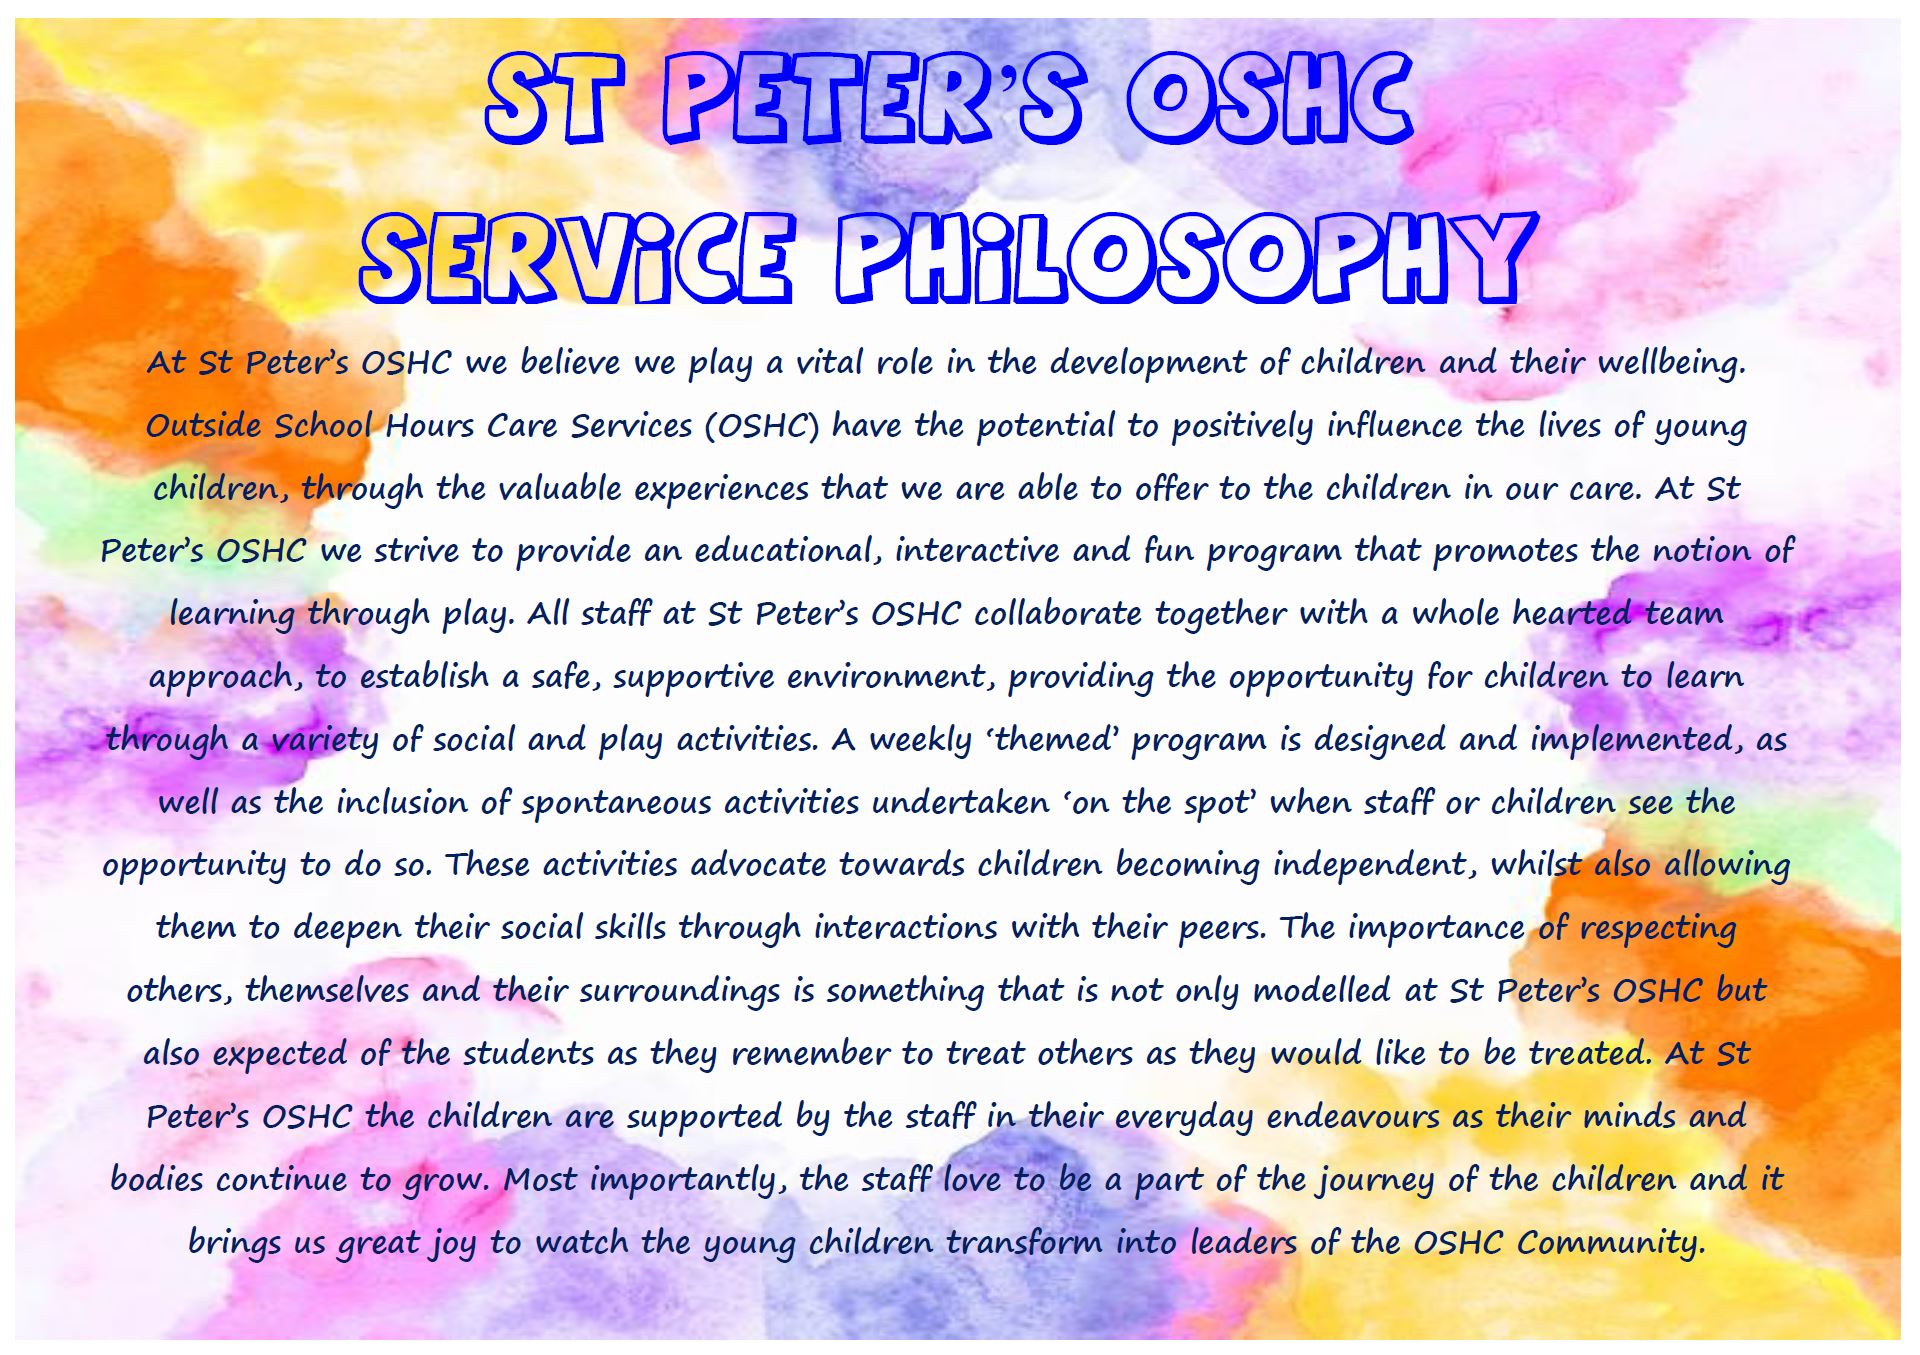 Philosophy OSHC.JPG